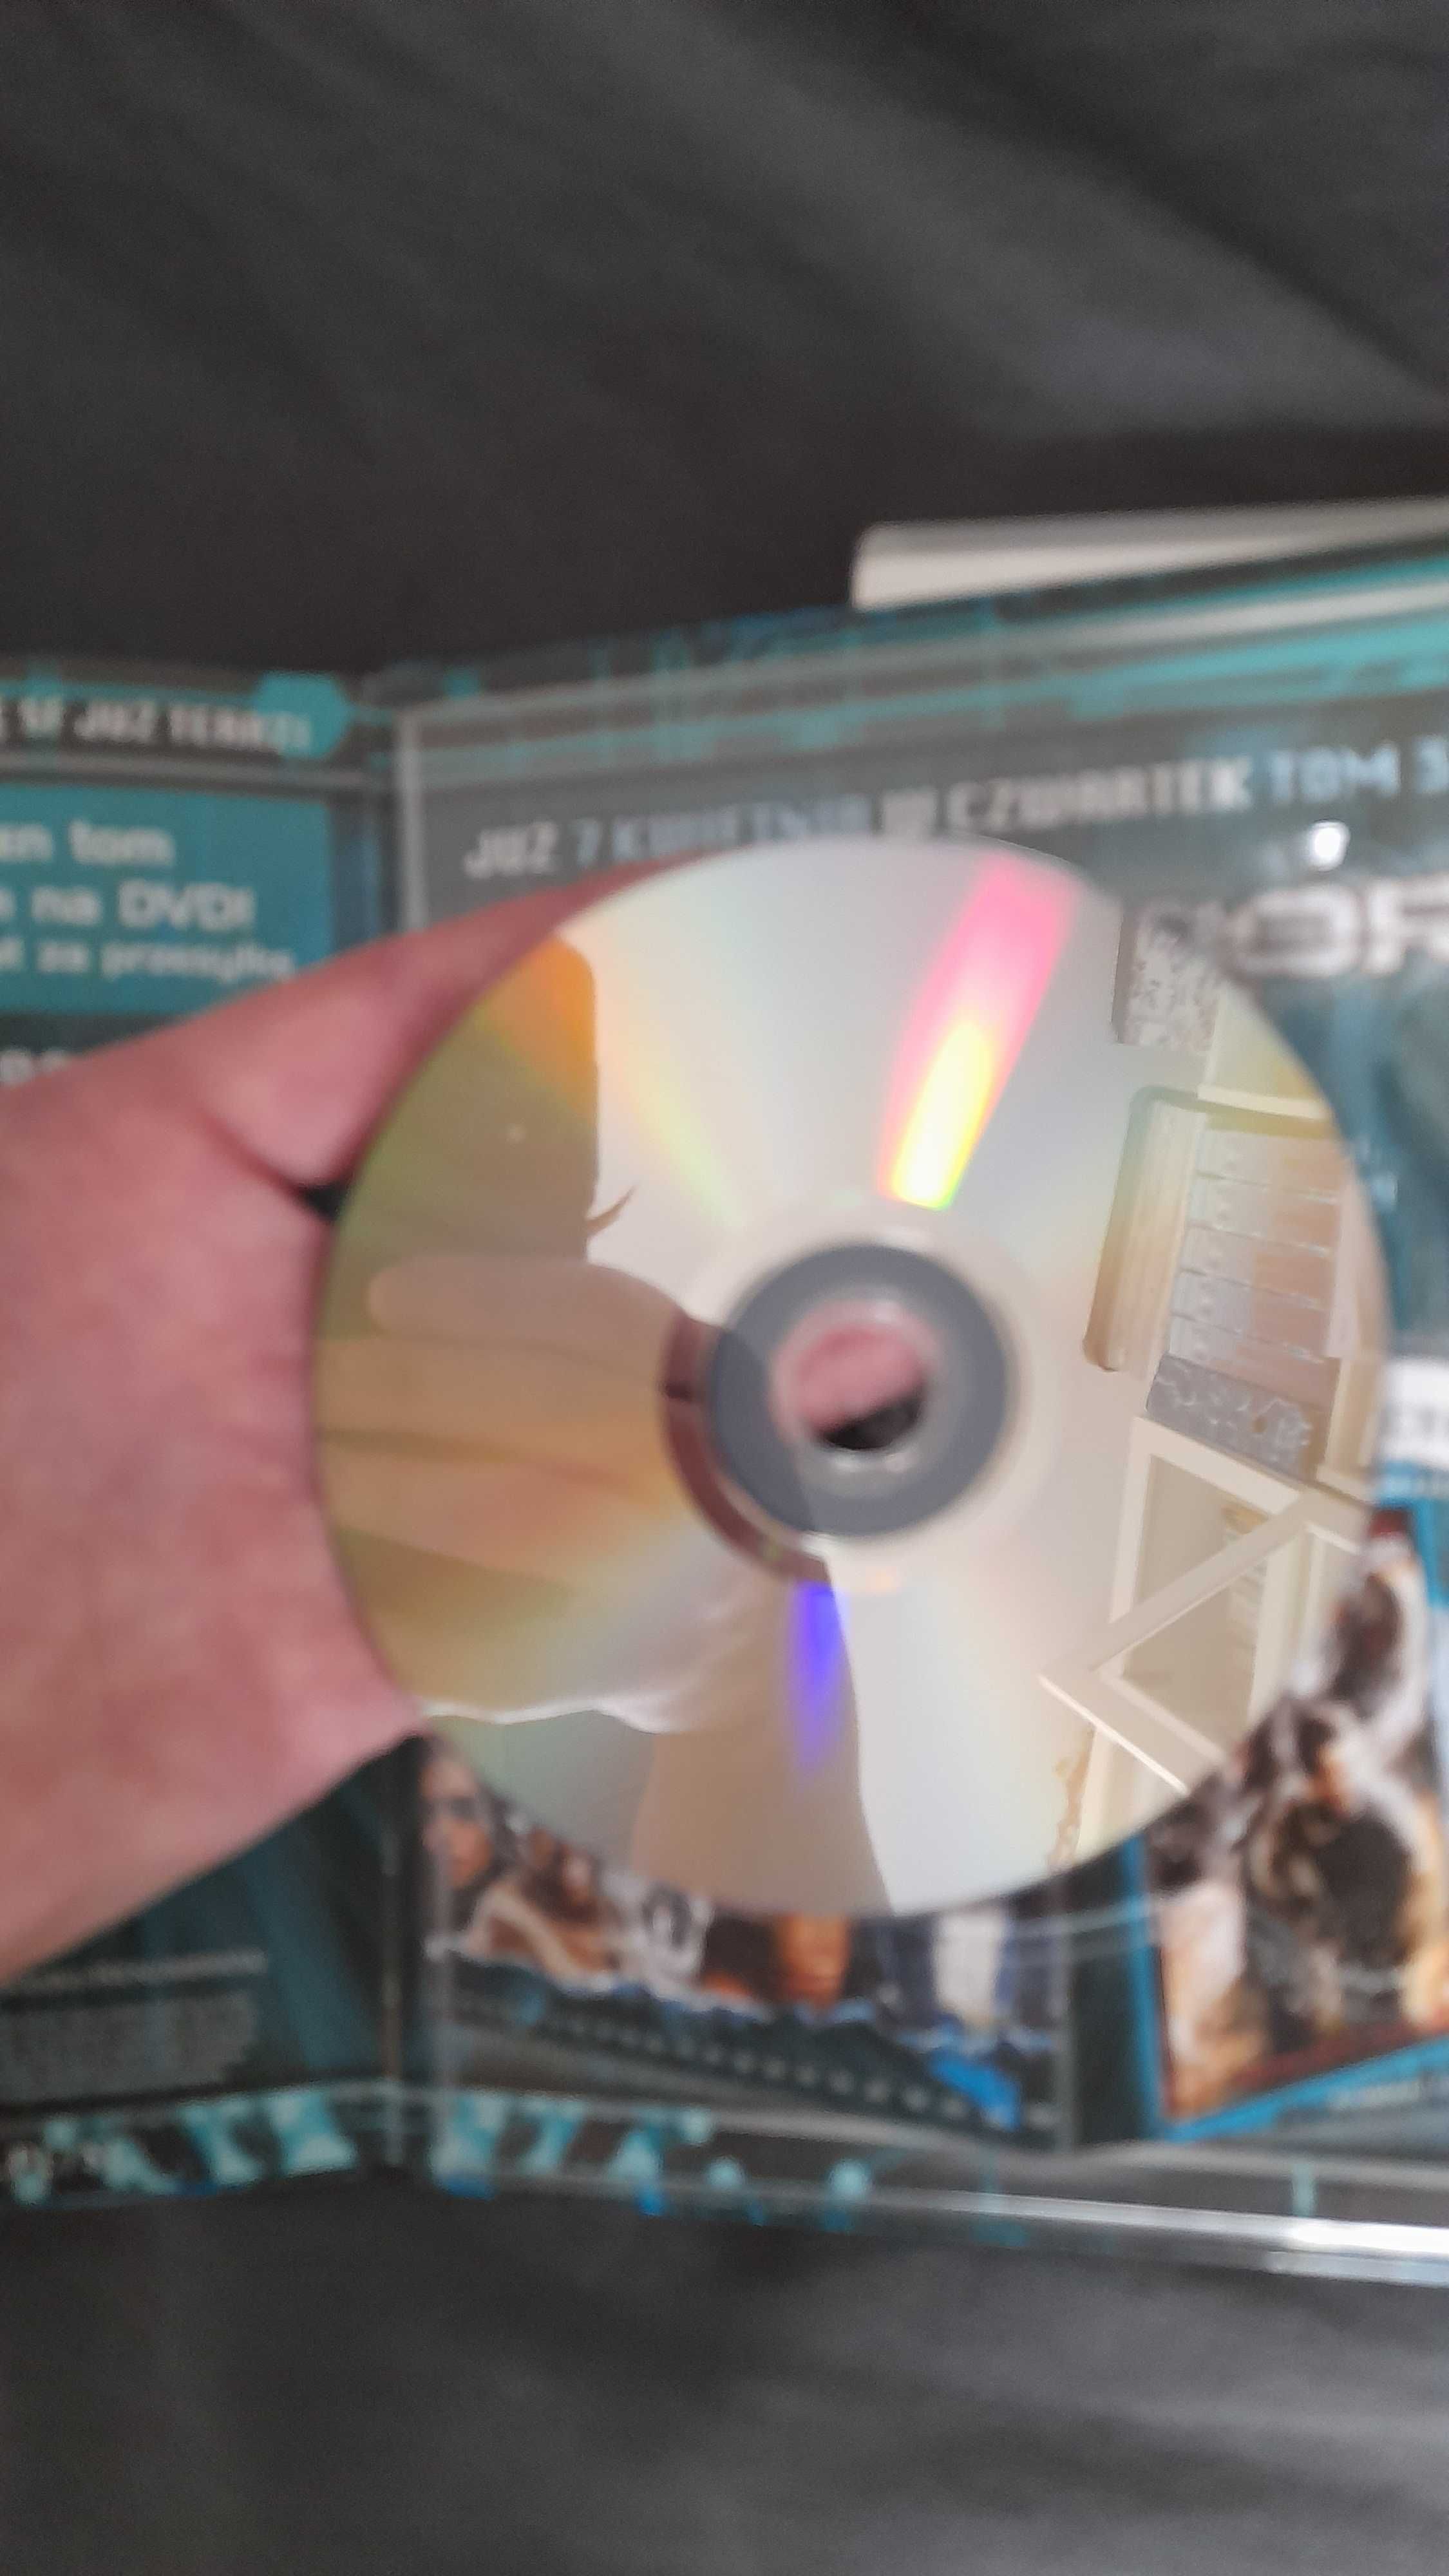 Płyta dvd, film Transformers, zestaw 3